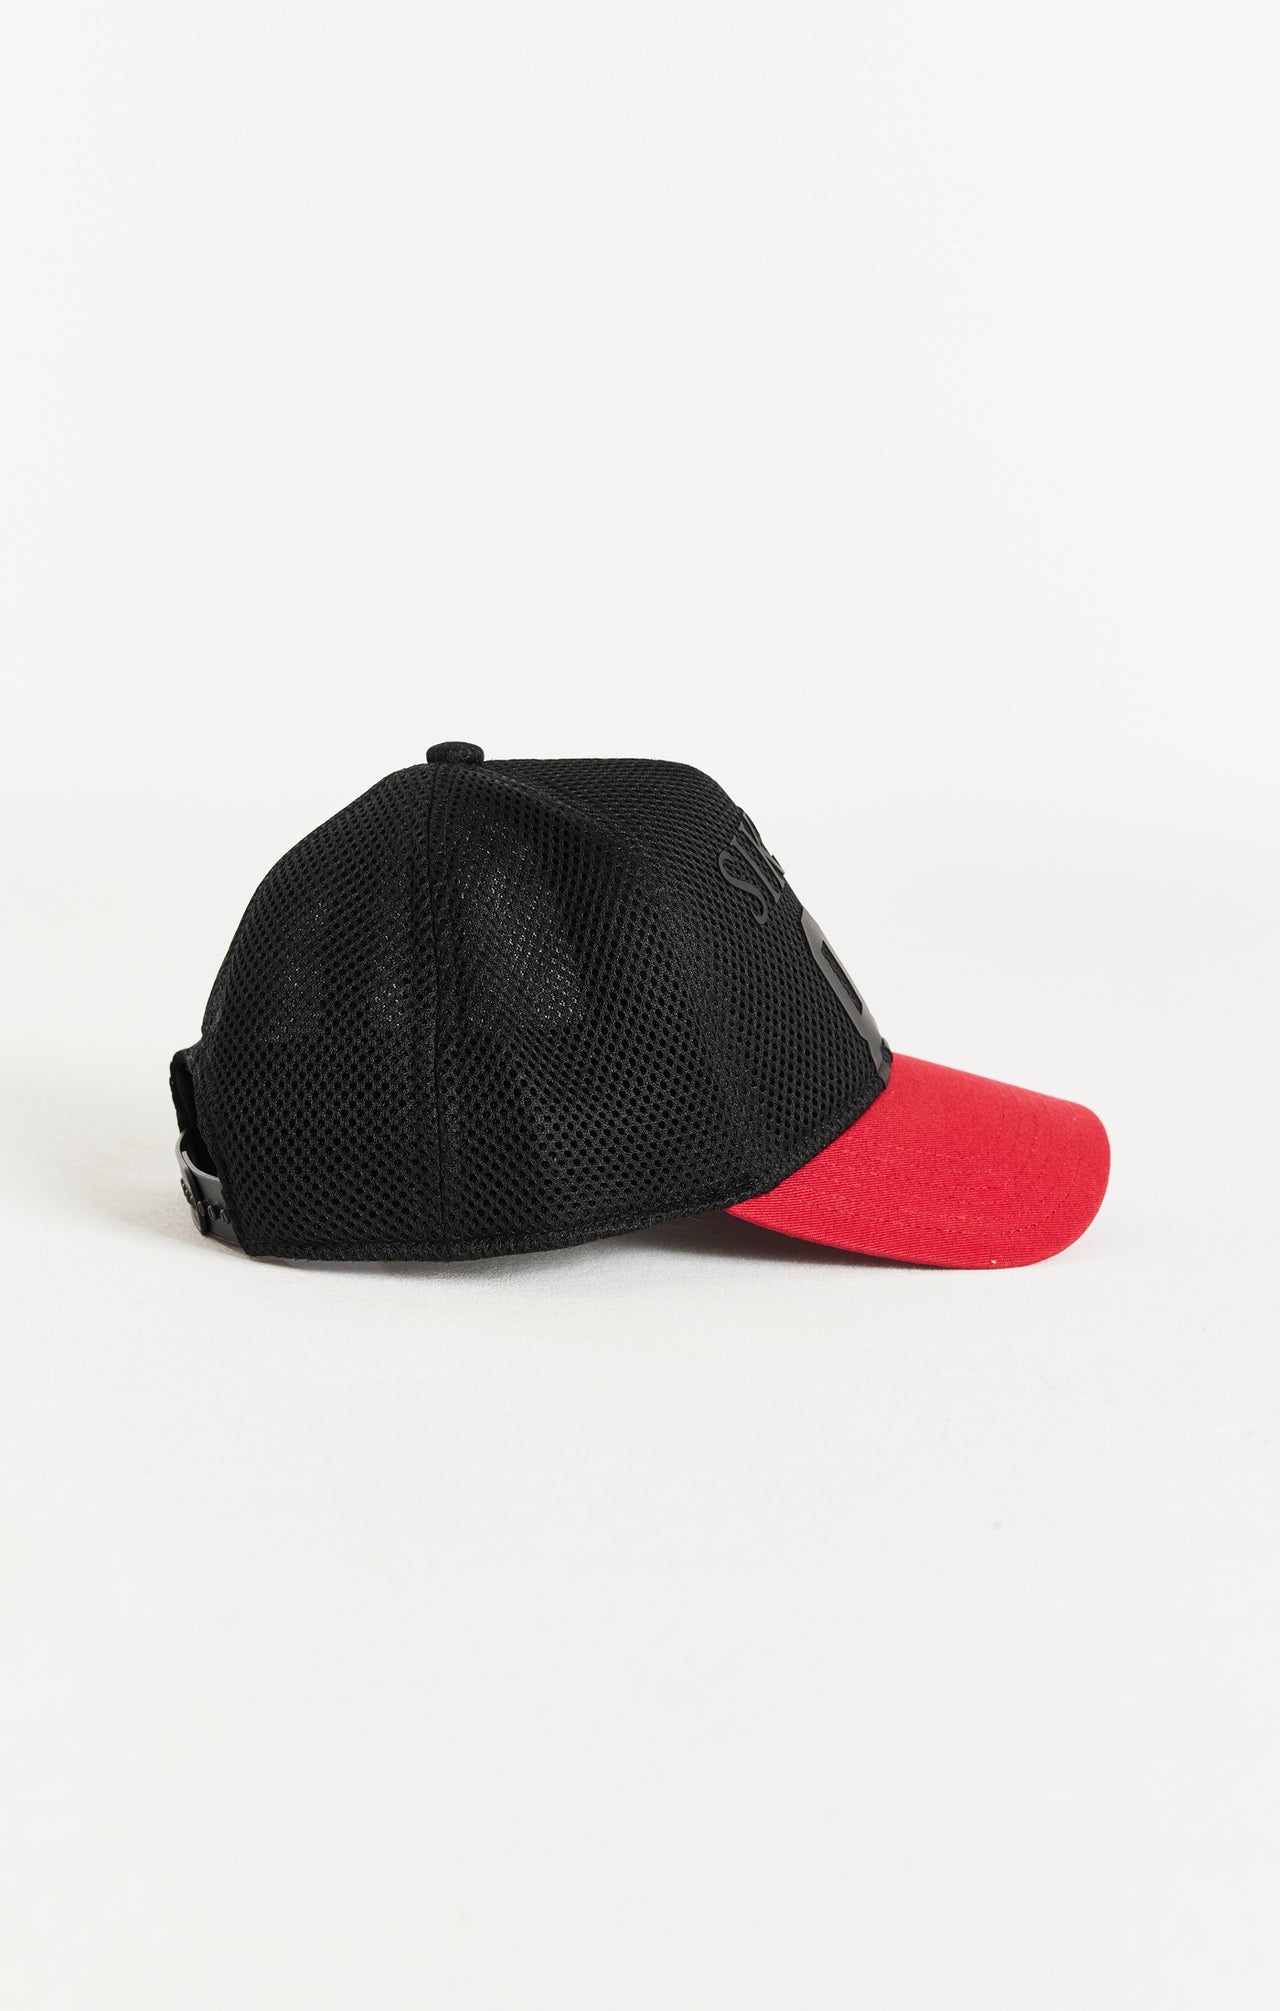 SikSilk Full Mesh 89 Cap - Black & Red (2)